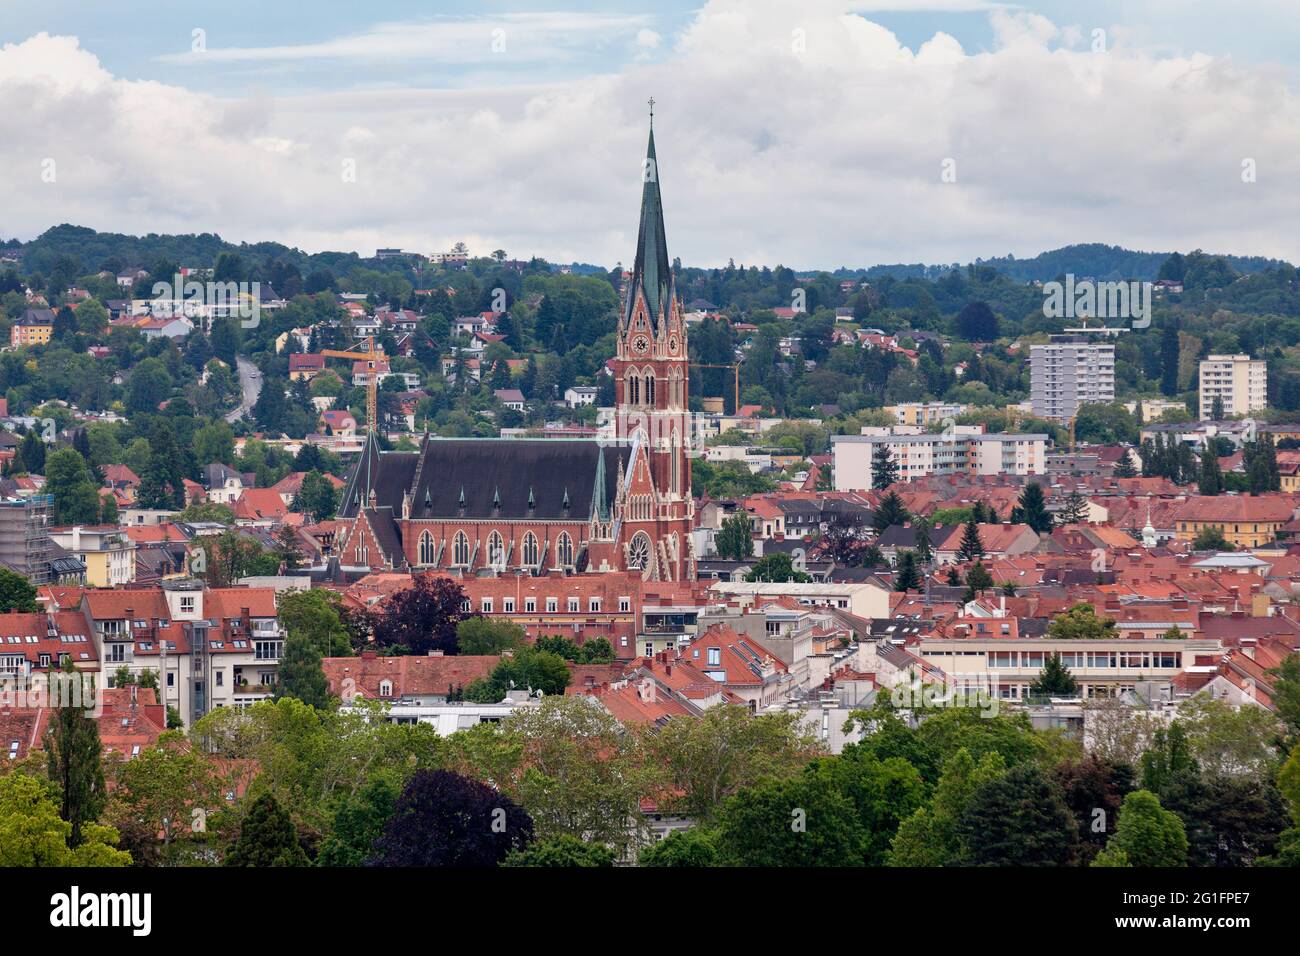 Herz-Jesu-Kirche (in inglese: Chiesa del Sacro cuore di Gesù) è la più grande chiesa di Graz, in Austria. È stato progettato fino all'ultimo dettaglio da Foto Stock